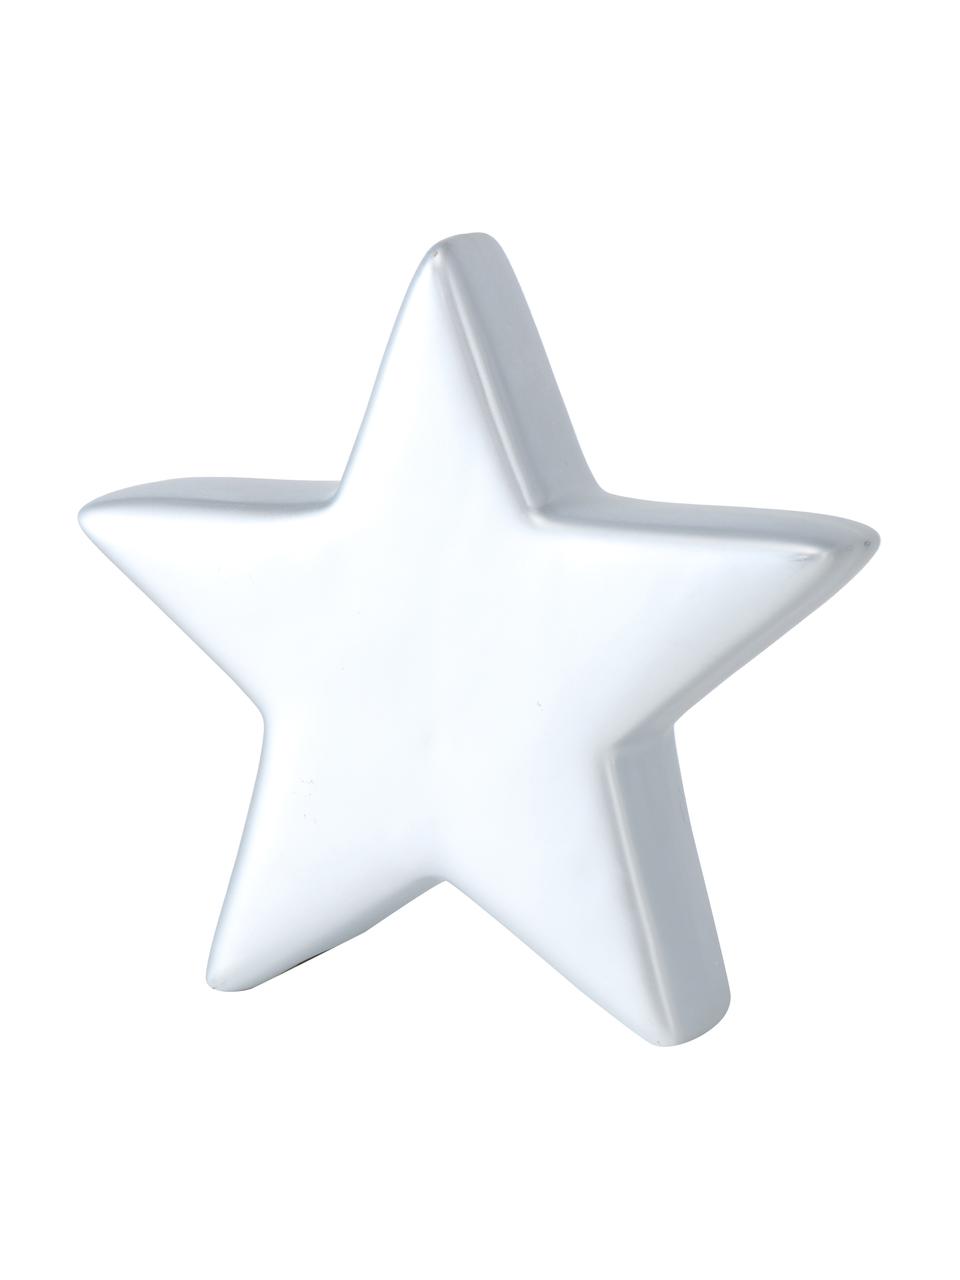 Decoratieve sterren Glimmy in zilverkleur H 14 cm, 2 stuks, Keramiek, Zilverkleurig, wit, B 17 x H 11 cm